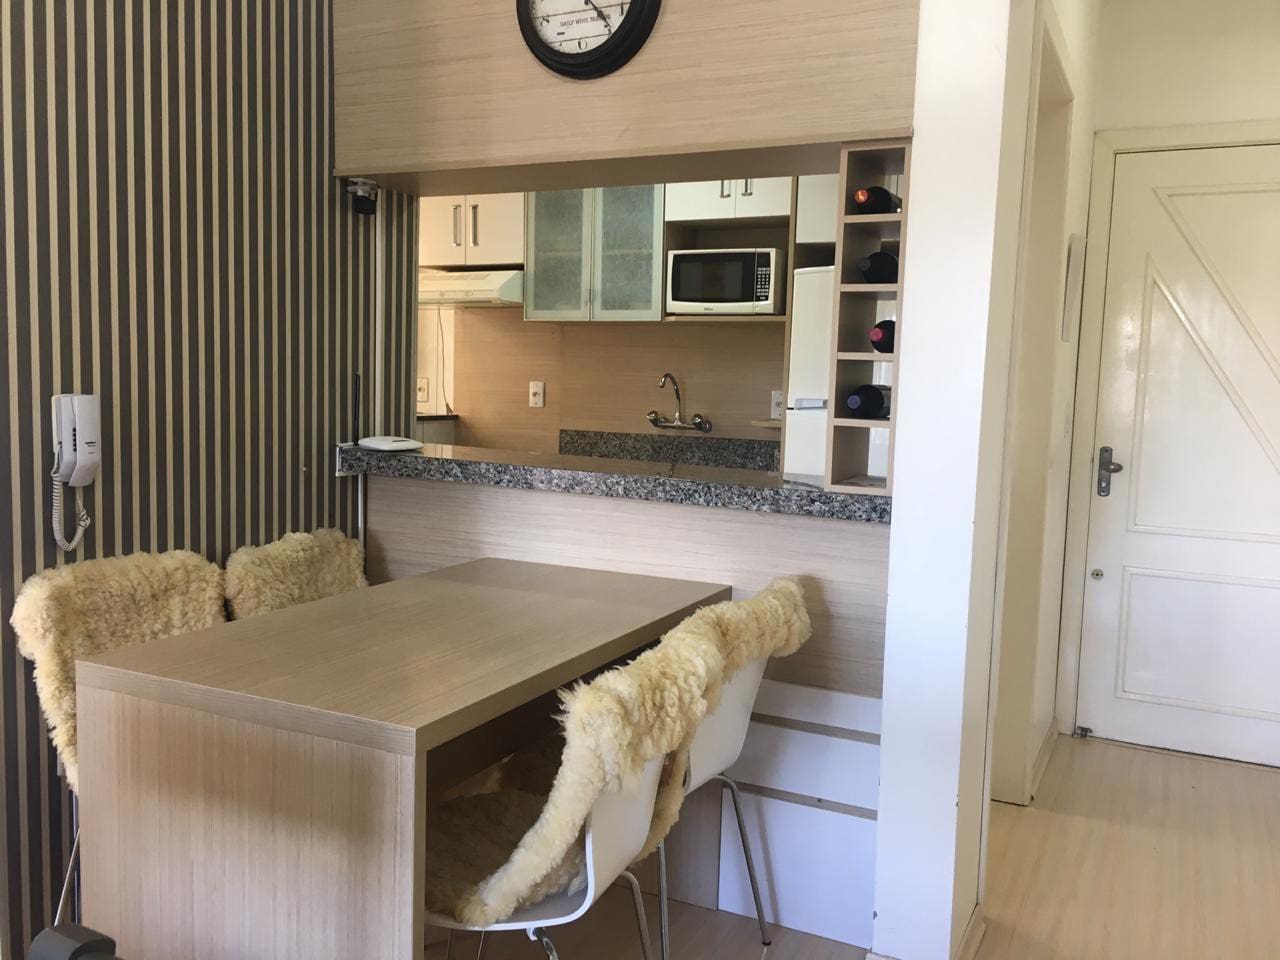 Cozinha no apartamento em airbnb em canela e gramado